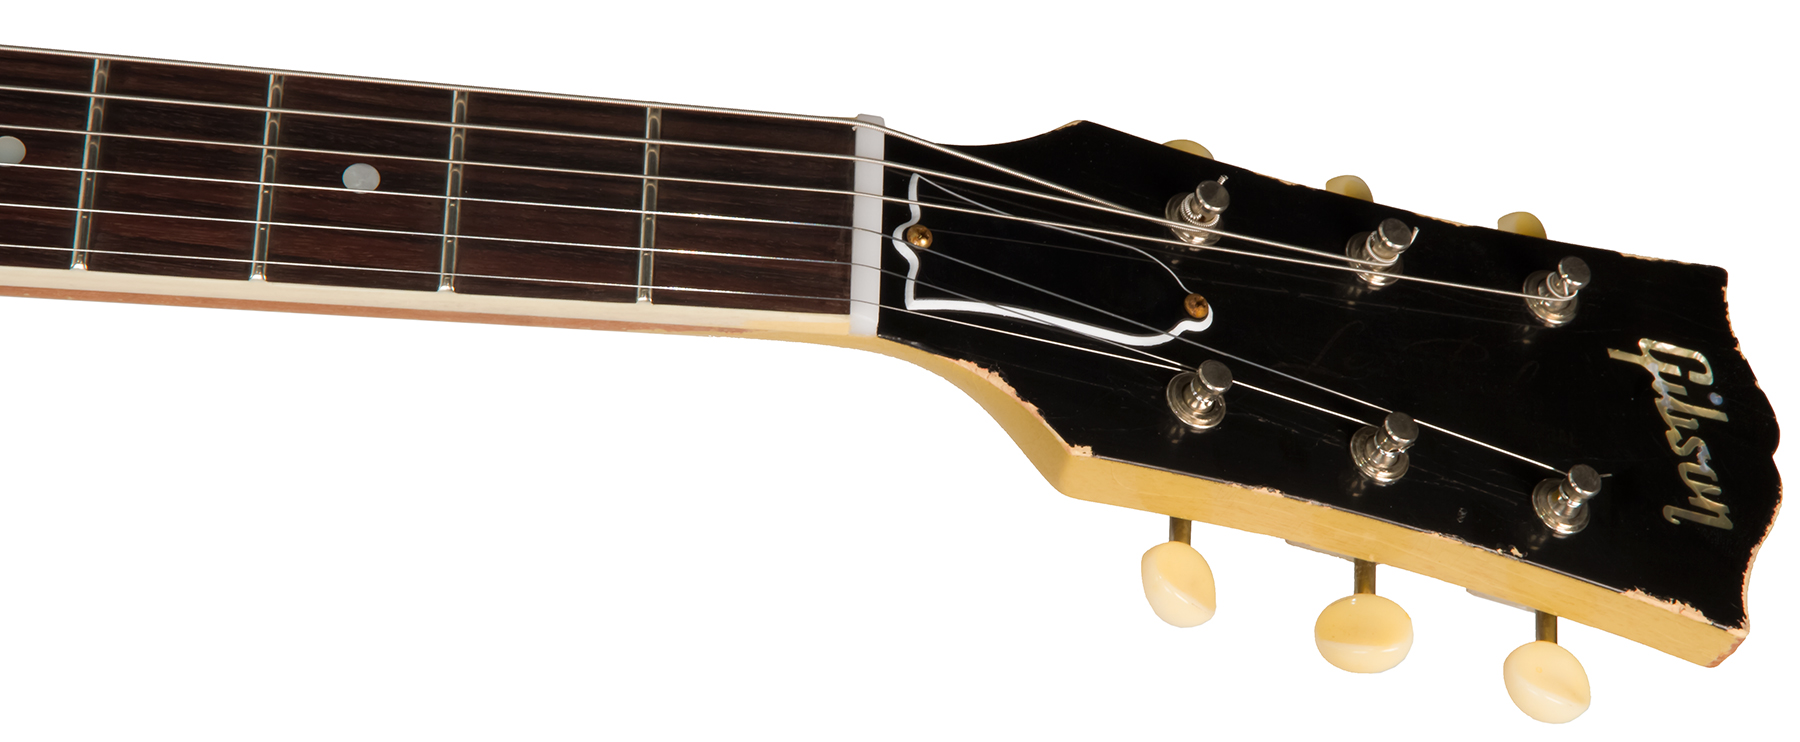 Gibson Custom Shop M2m Les Paul Special 1957 Single Cut Reissue P90 Ht Rw #70811 - Heavy Aged Tv Yellow - Guitare Électrique Single Cut - Variation 4